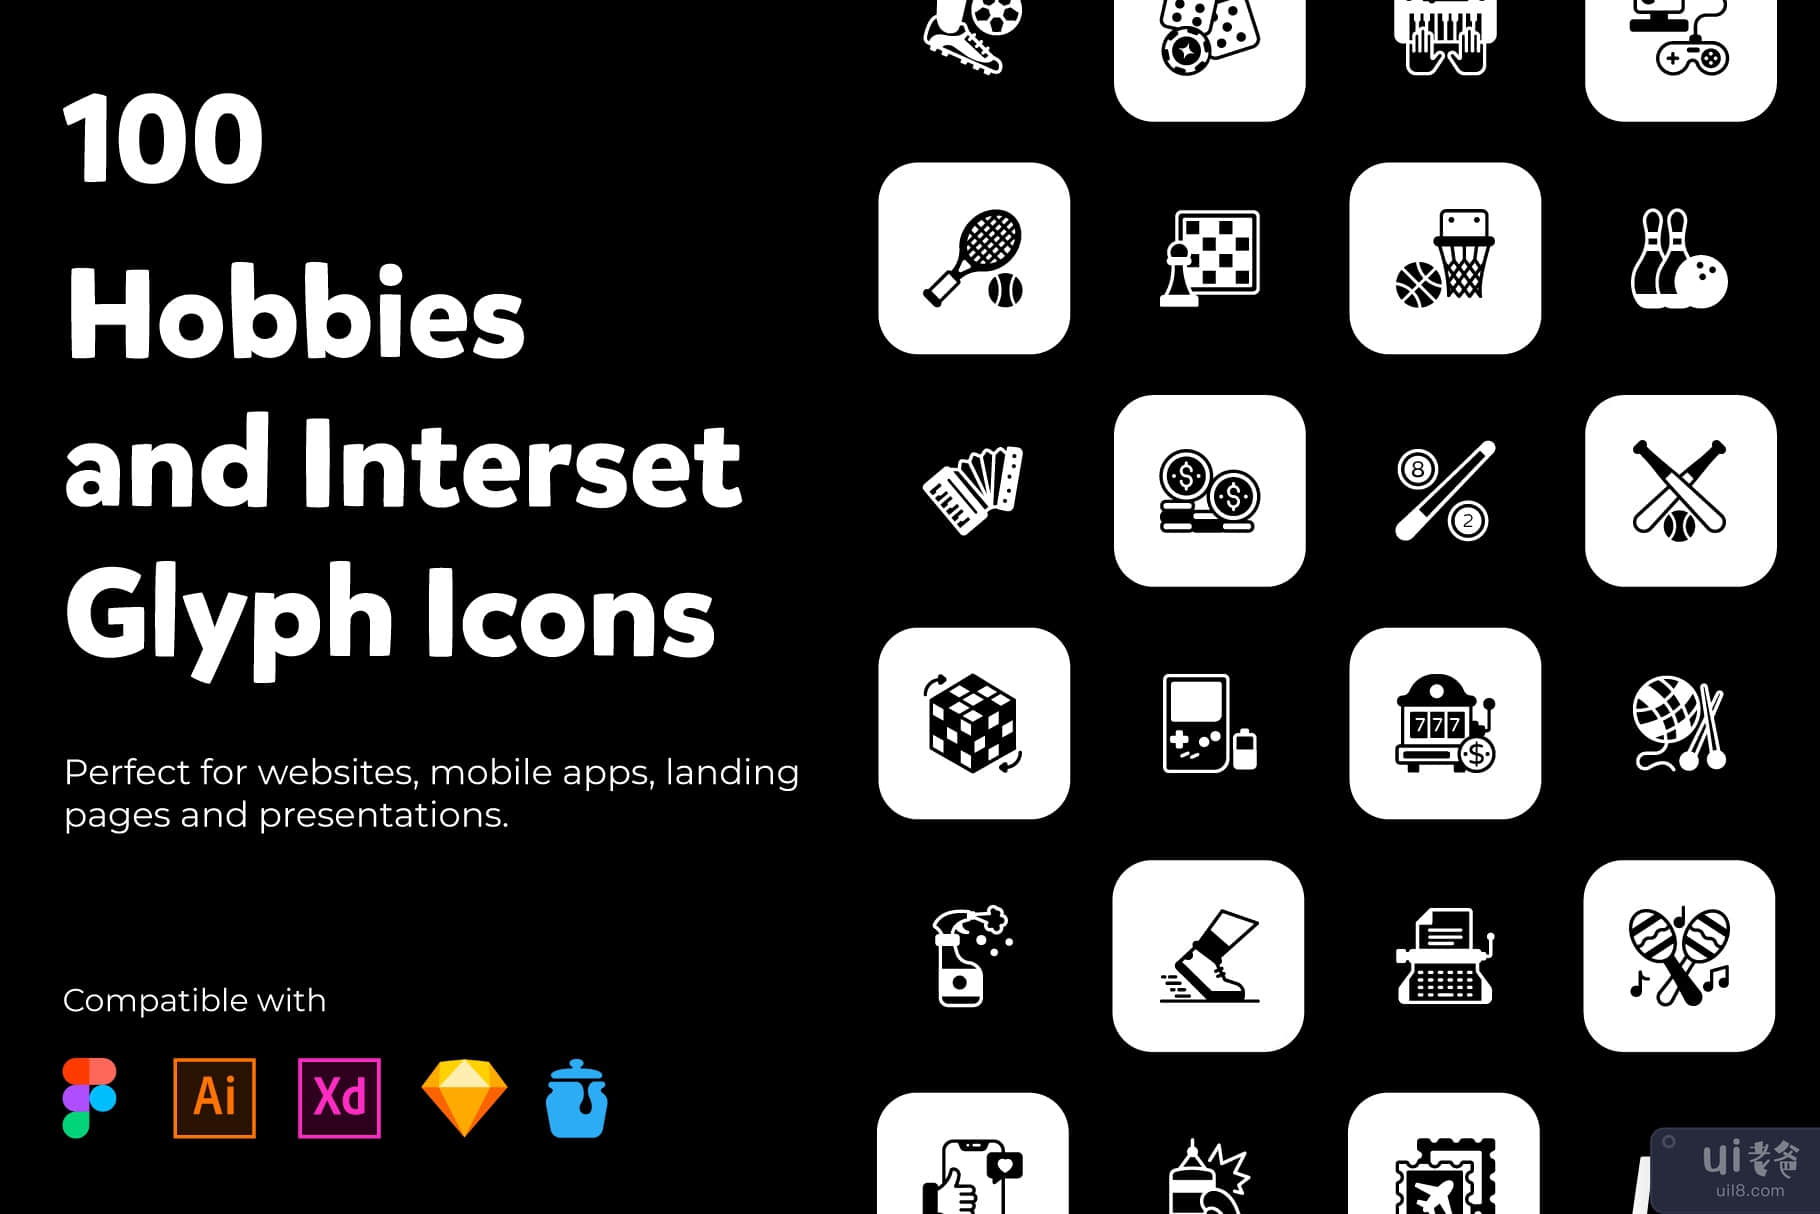 爱好和兴趣实体图标(Hobbies and Interests Solid Icons)插图2